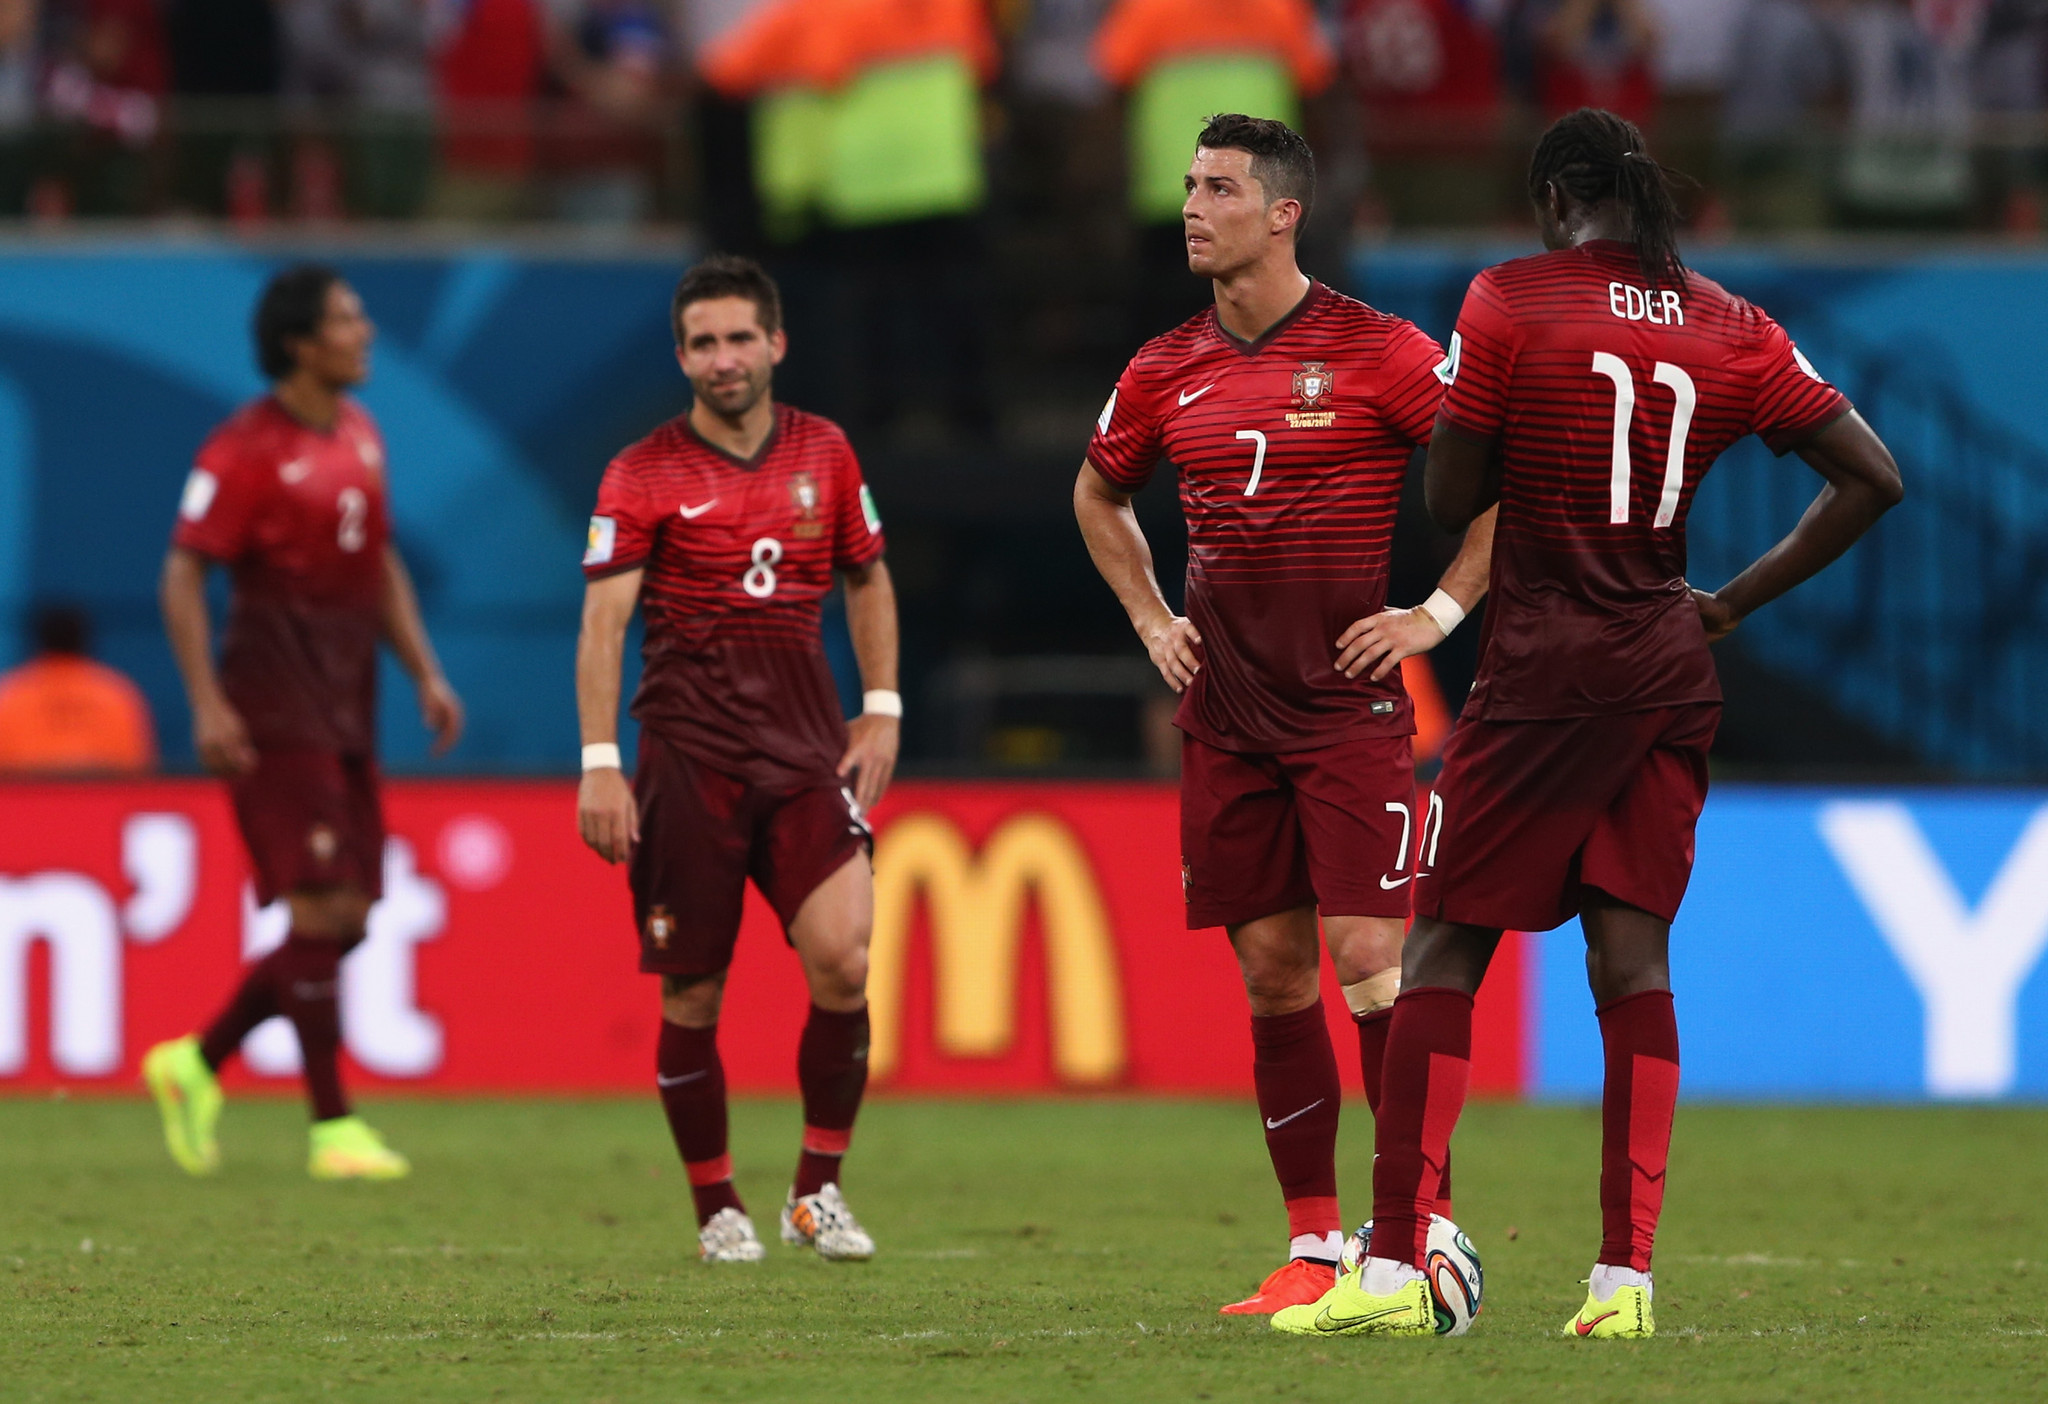 Espanha 0-0 Portugal: Primeiro teste sem golos e sem brilho